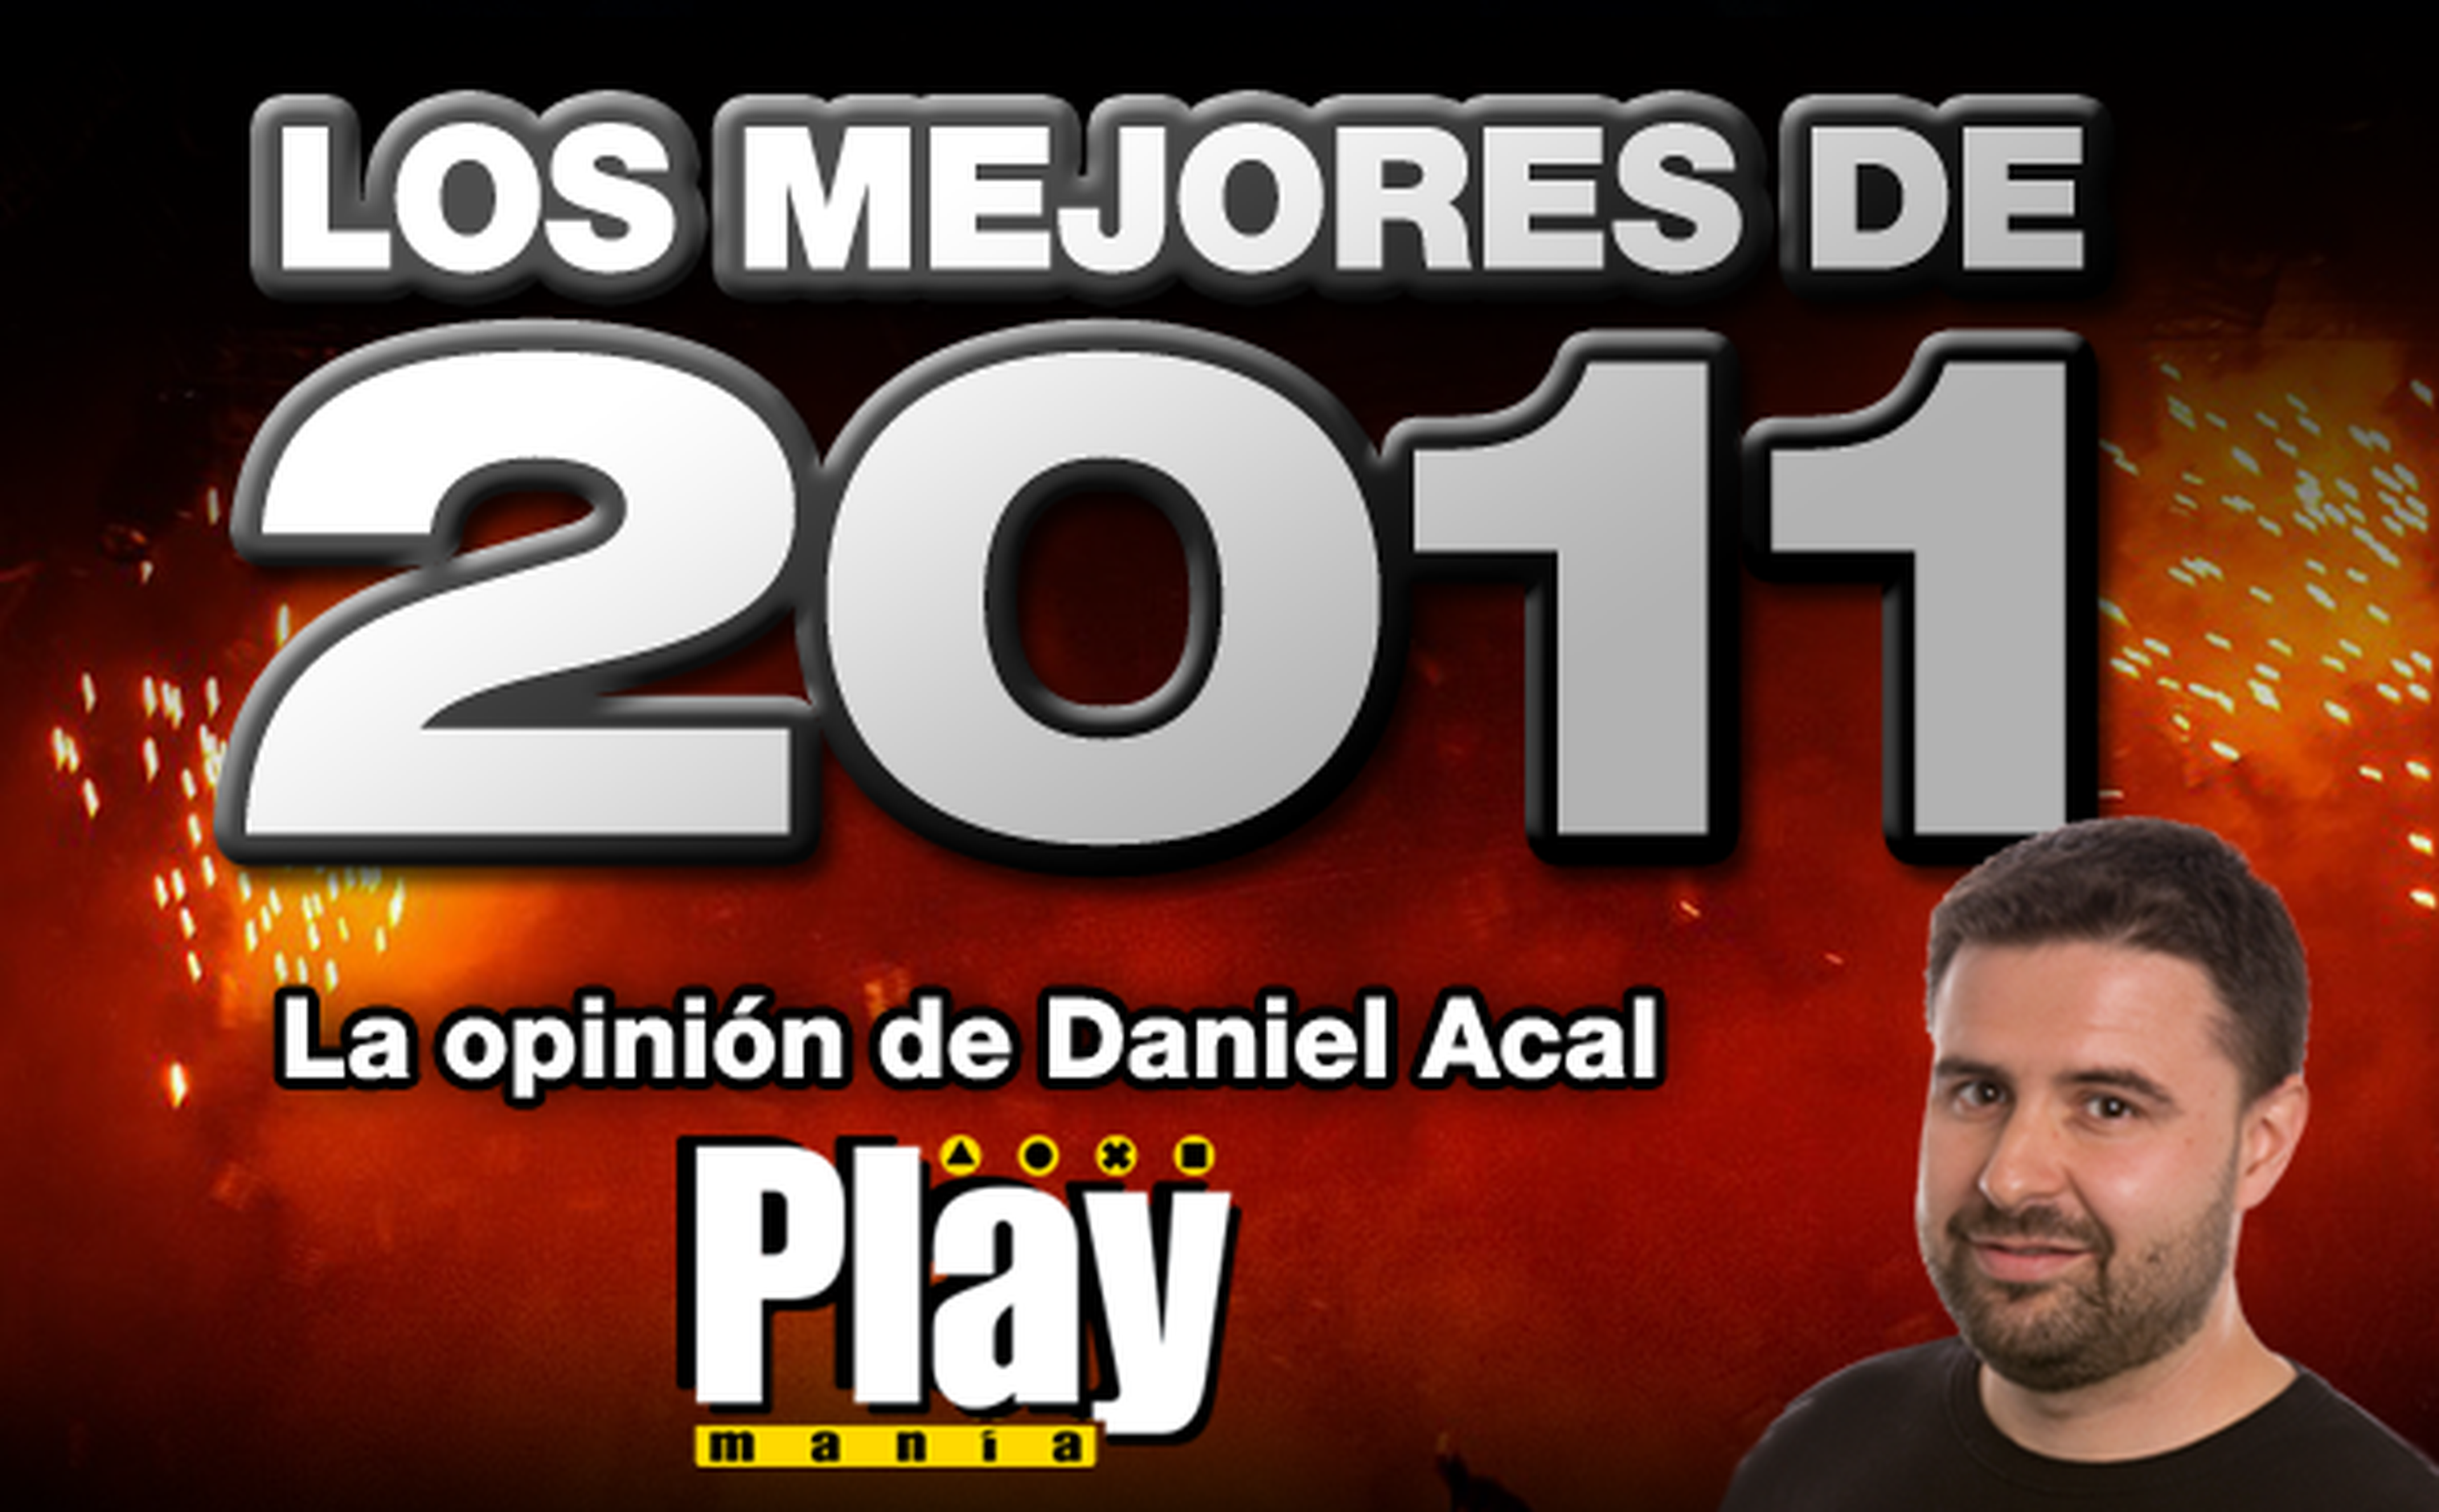 Los mejores de 2011: Daniel Acal